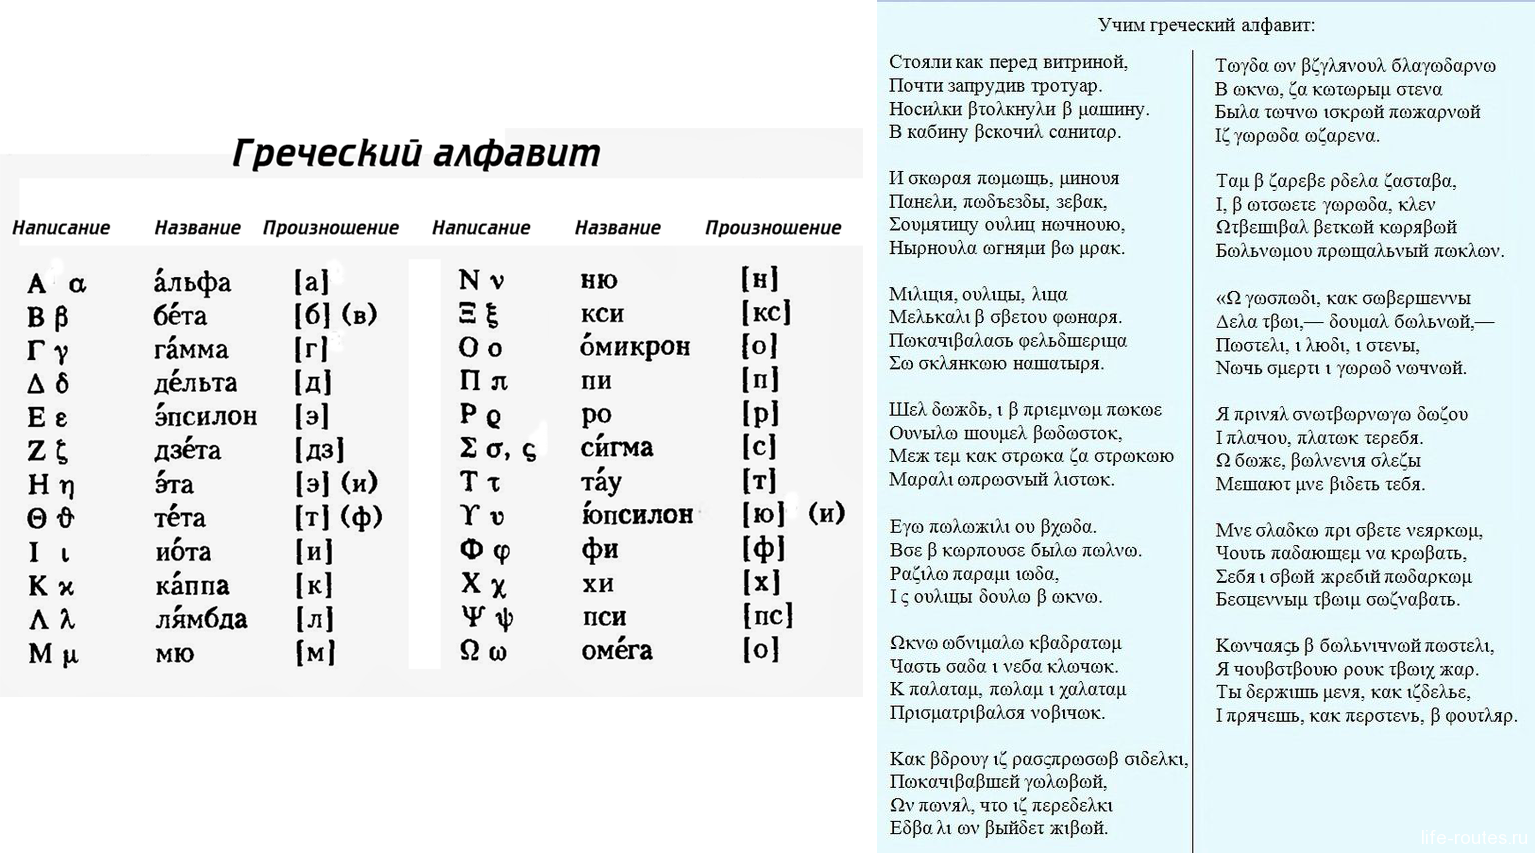 Греческий язык латынь. Греческий алфавит с транскрипцией. Греческий язык учить с нуля. Произношение букв греческого алфавита. Произношение греческих слов.